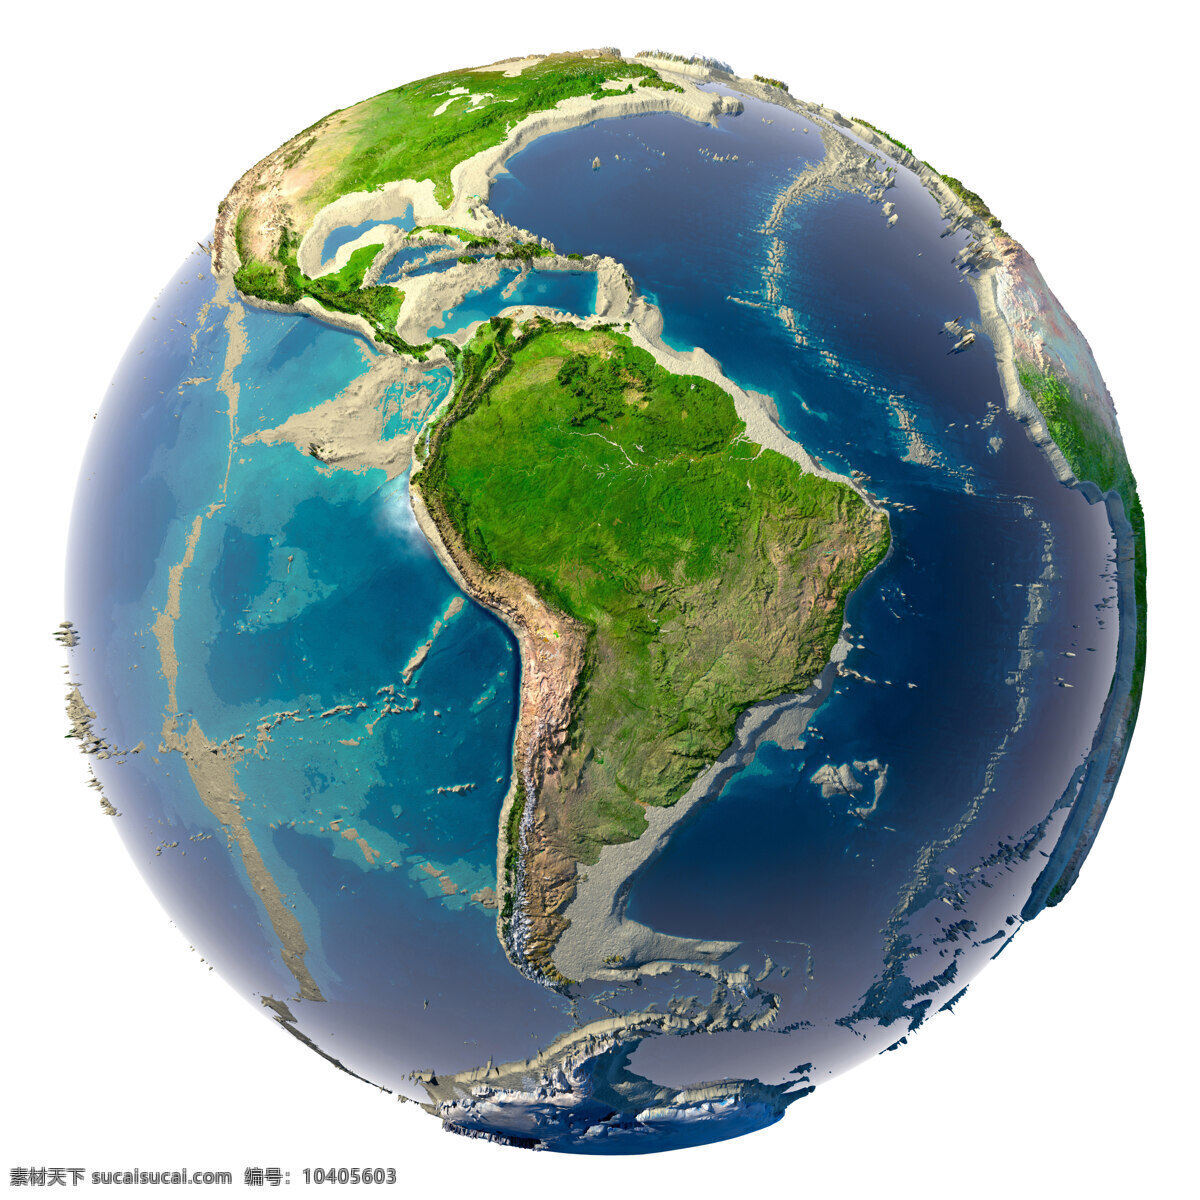 地球 地球模型 高清图片 环球 科学研究 蓝色地球 立体 高清 世界 质感 设计图库 现代科技 地球与五大洲 矢量图